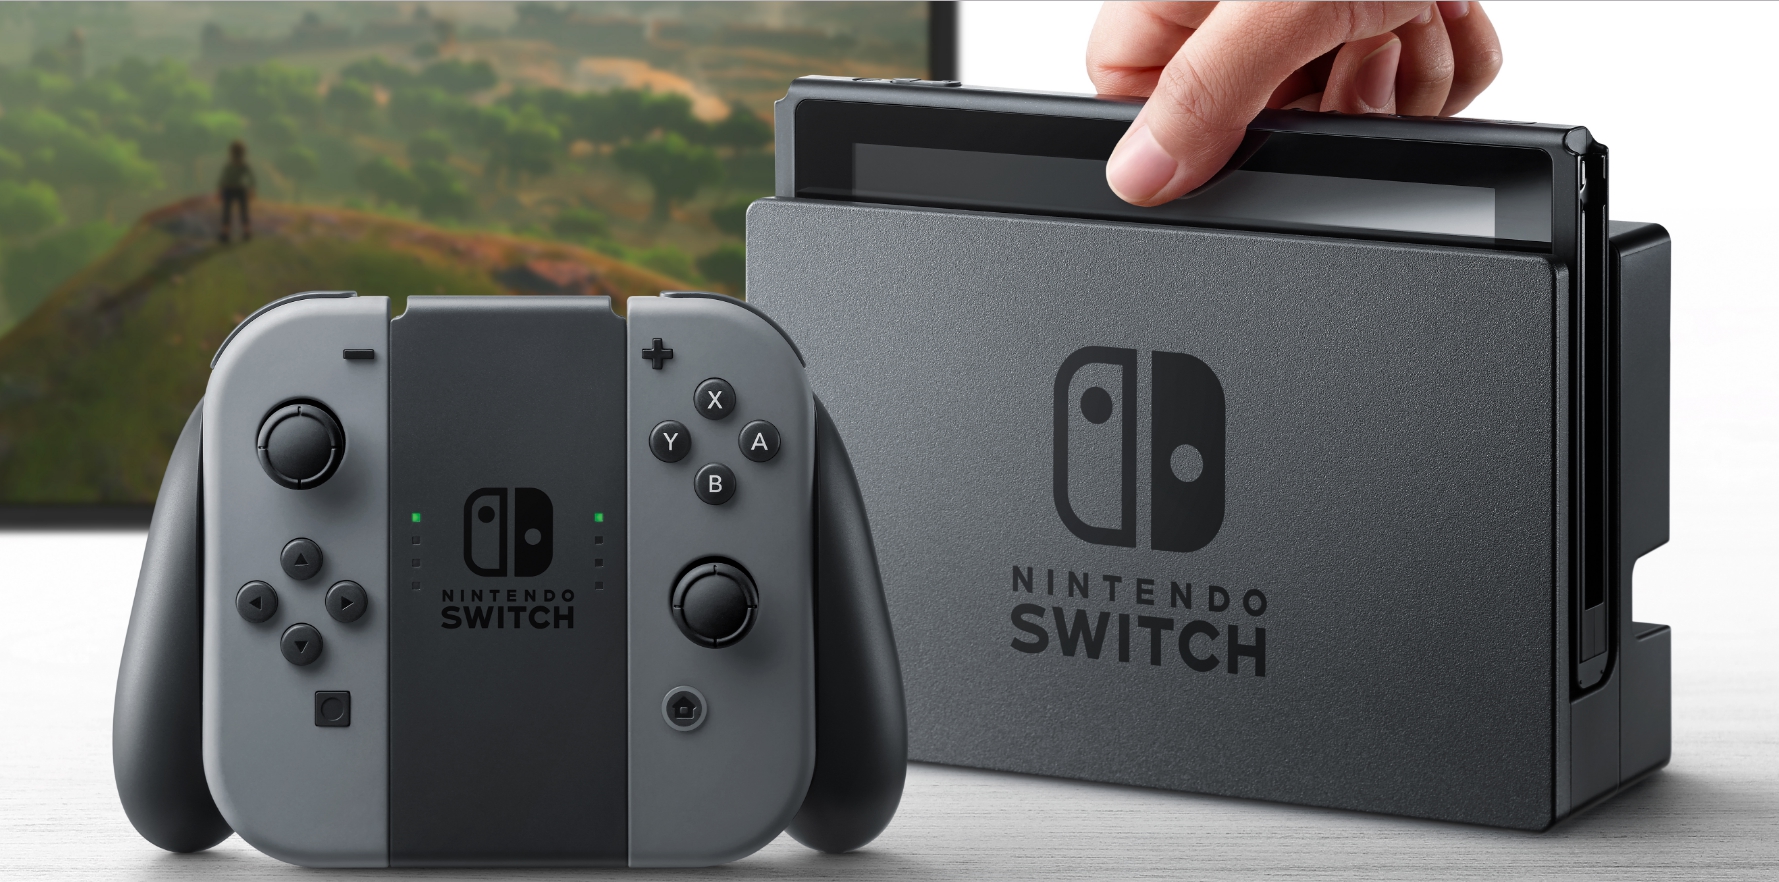 任天堂最新主机NX公布:命名Nintendo Switch